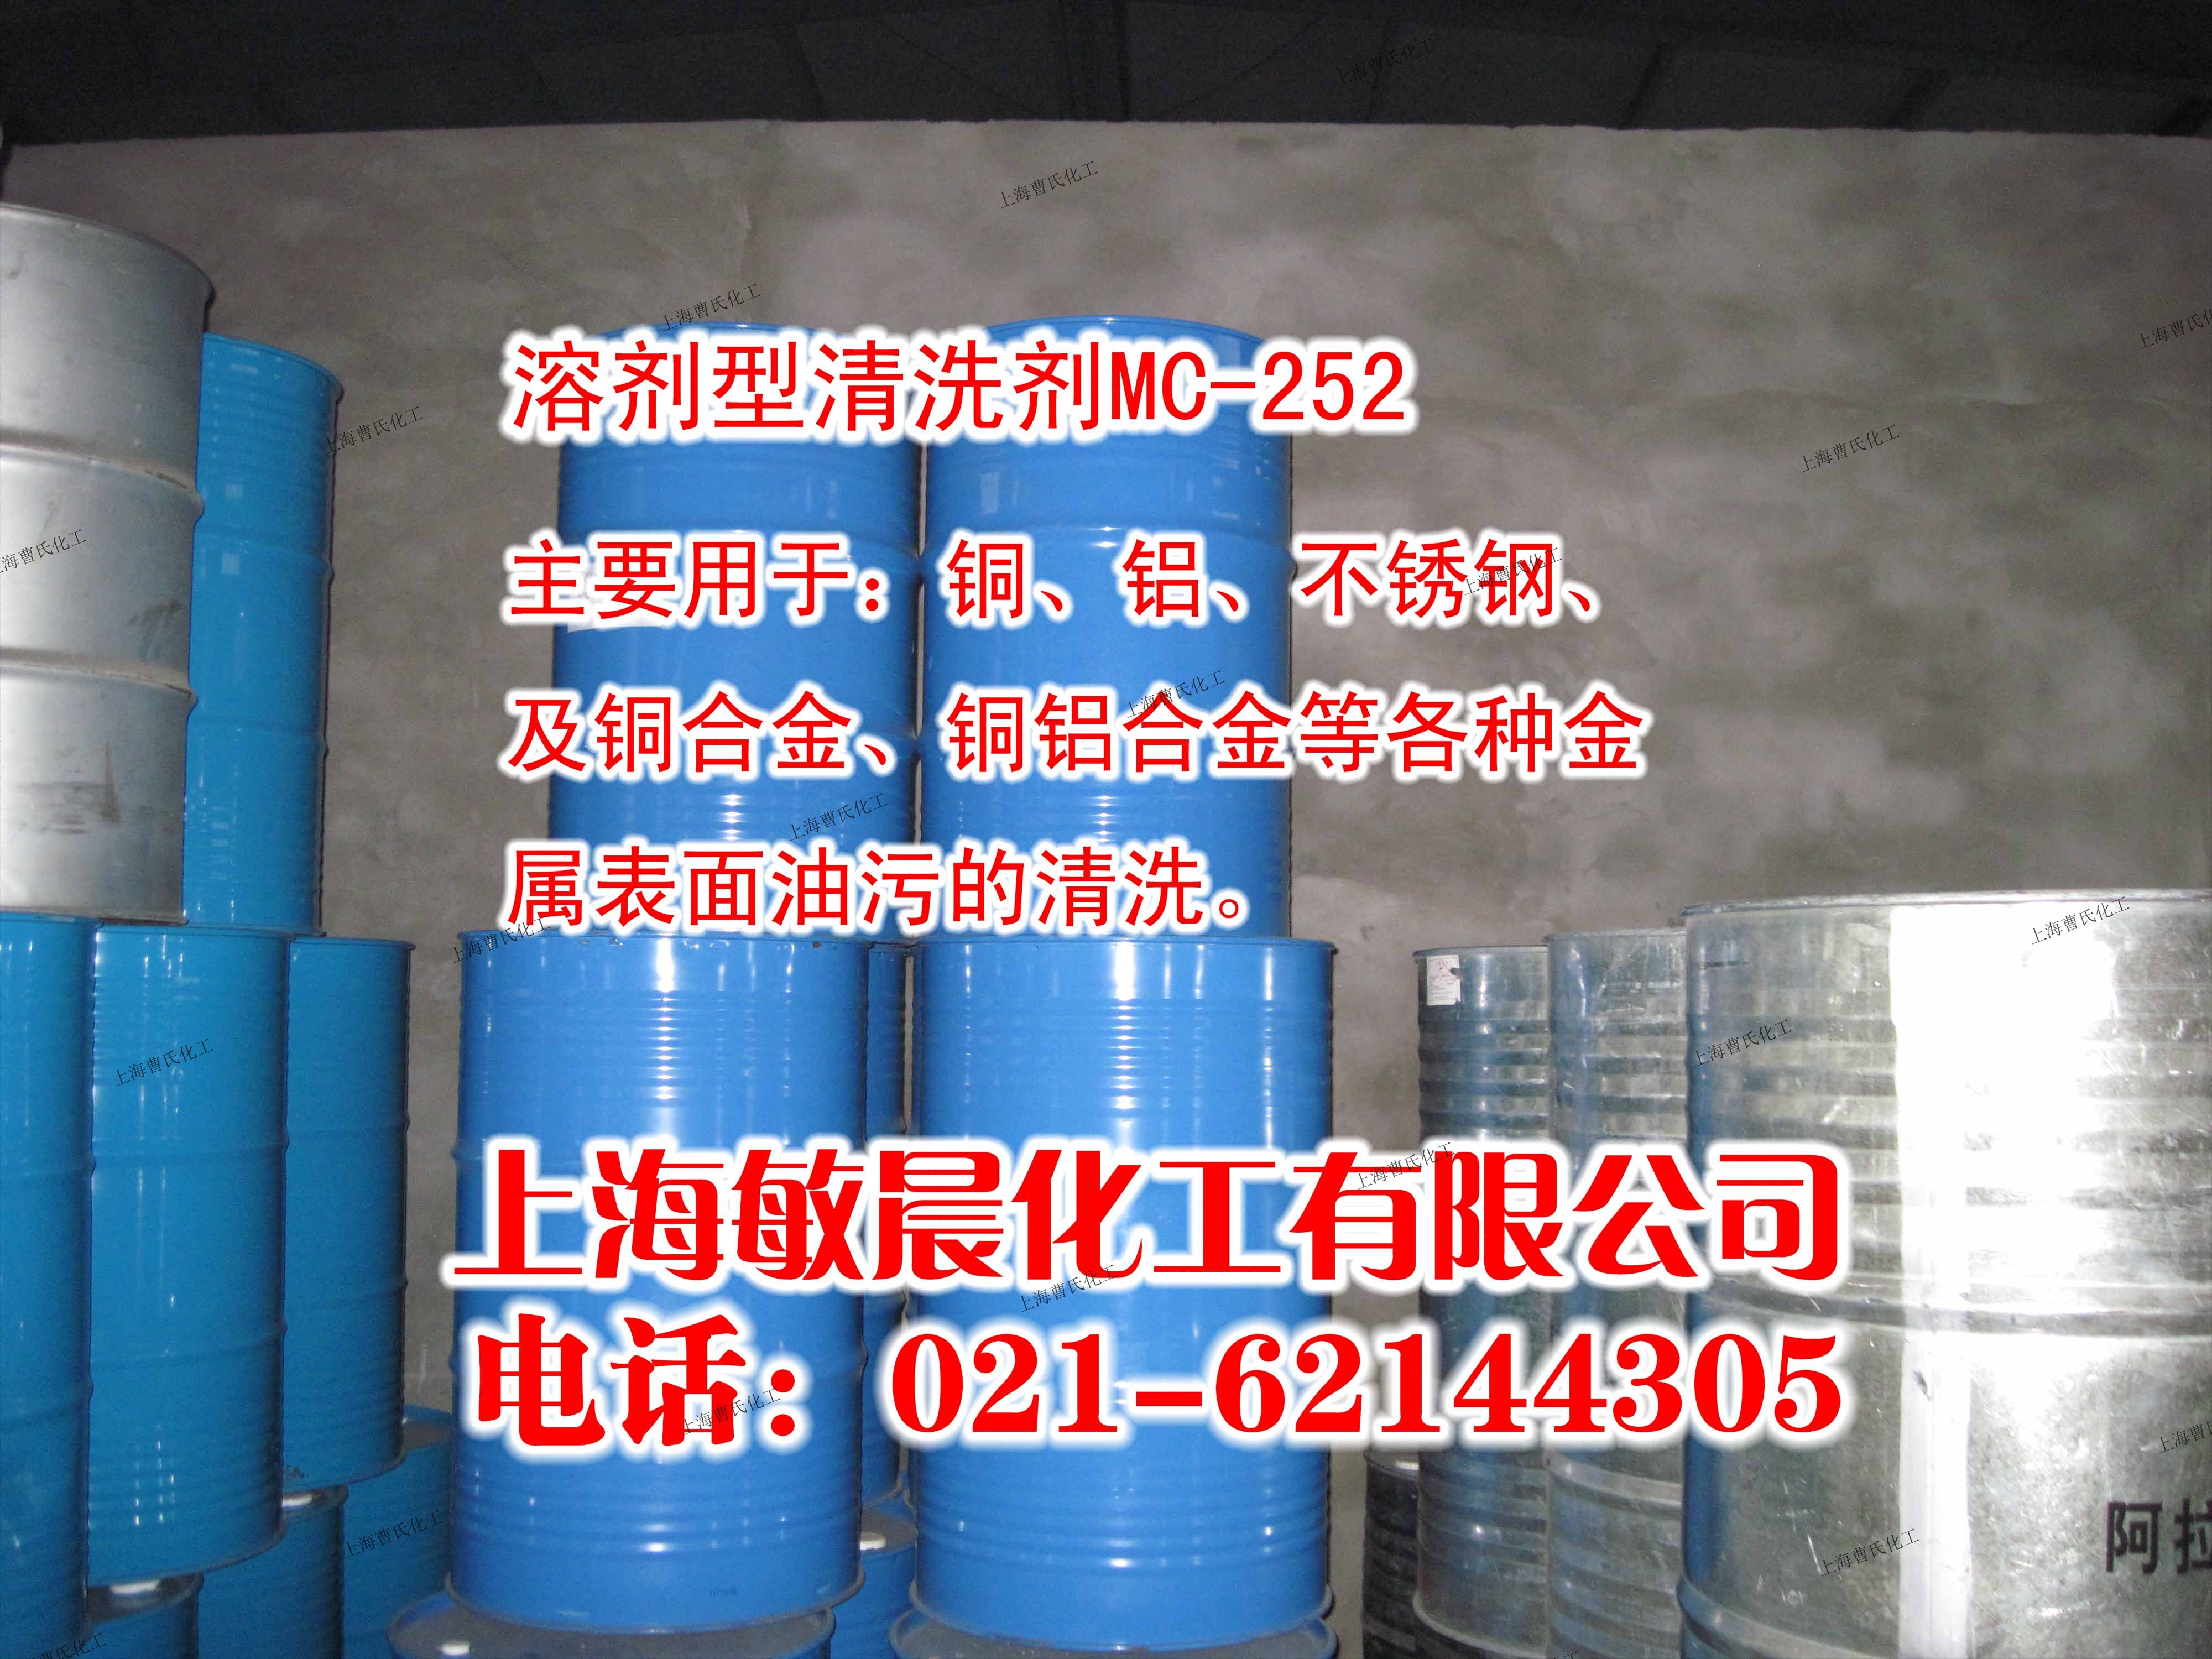 MC252 环保碳氢洗濯剂